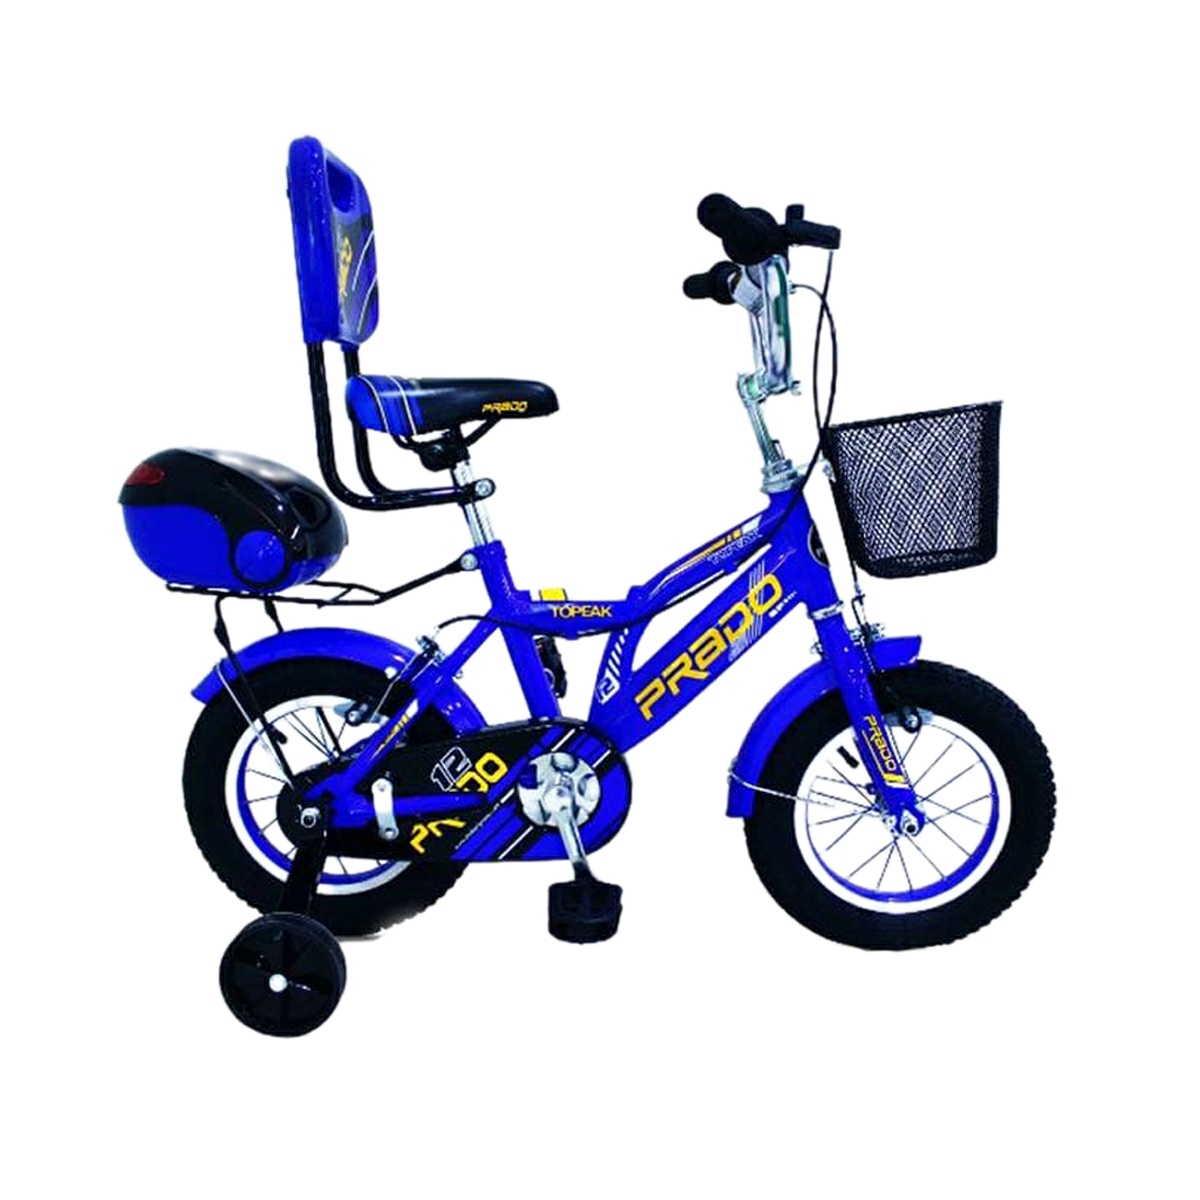 دوچرخه شهری مدل پرادو کد 1200476 سایز 12